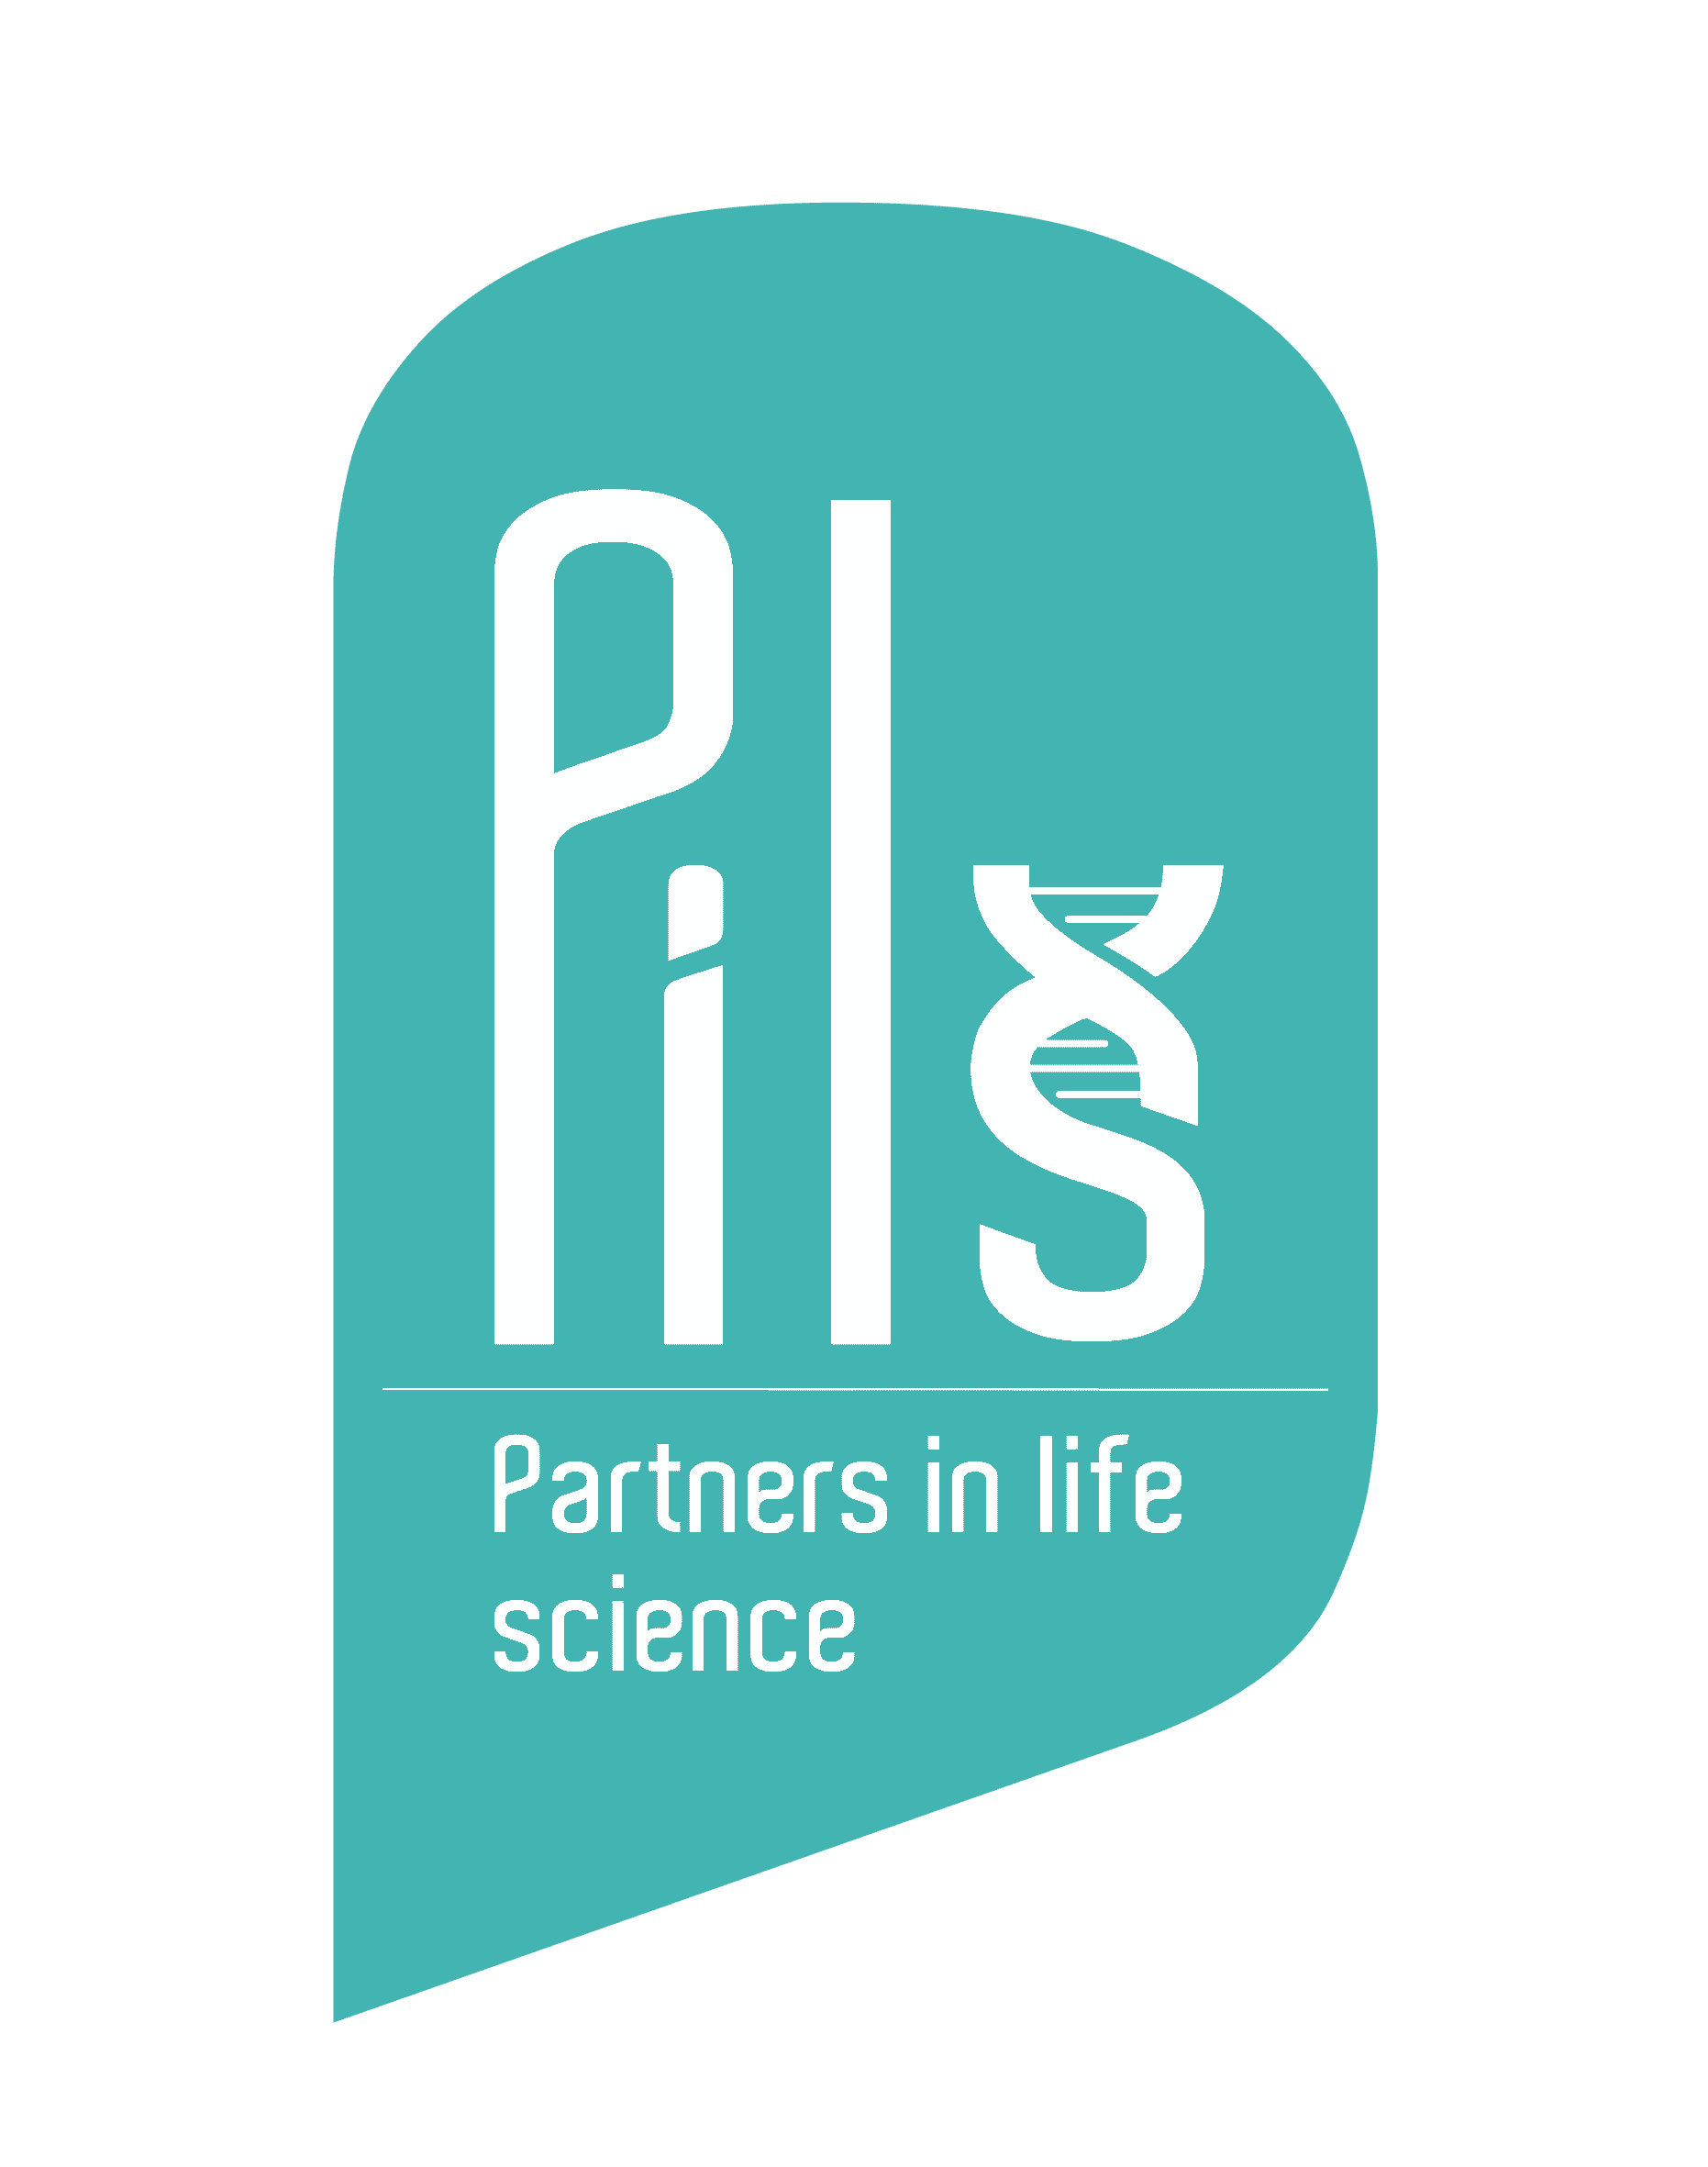 Pils, logotipo de Partner in Life Science